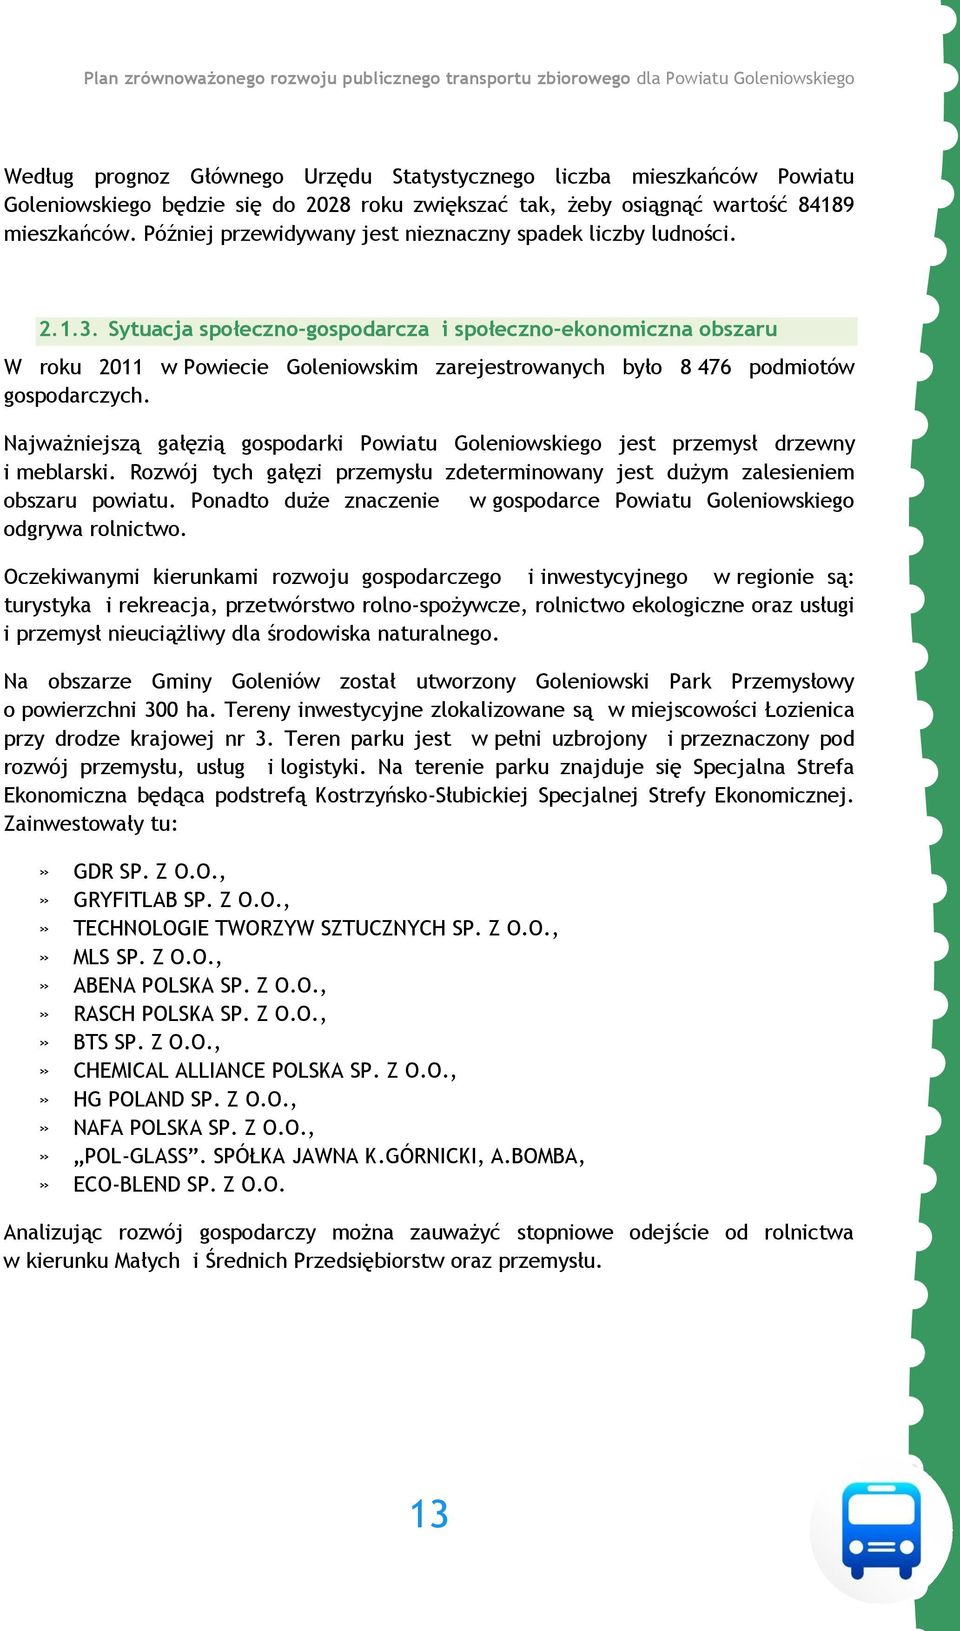 Sytuacja społeczno-gospodarcza i społeczno-ekonomiczna obszaru W roku 2011 w Powiecie Goleniowskim zarejestrowanych było 8 476 podmiotów gospodarczych.